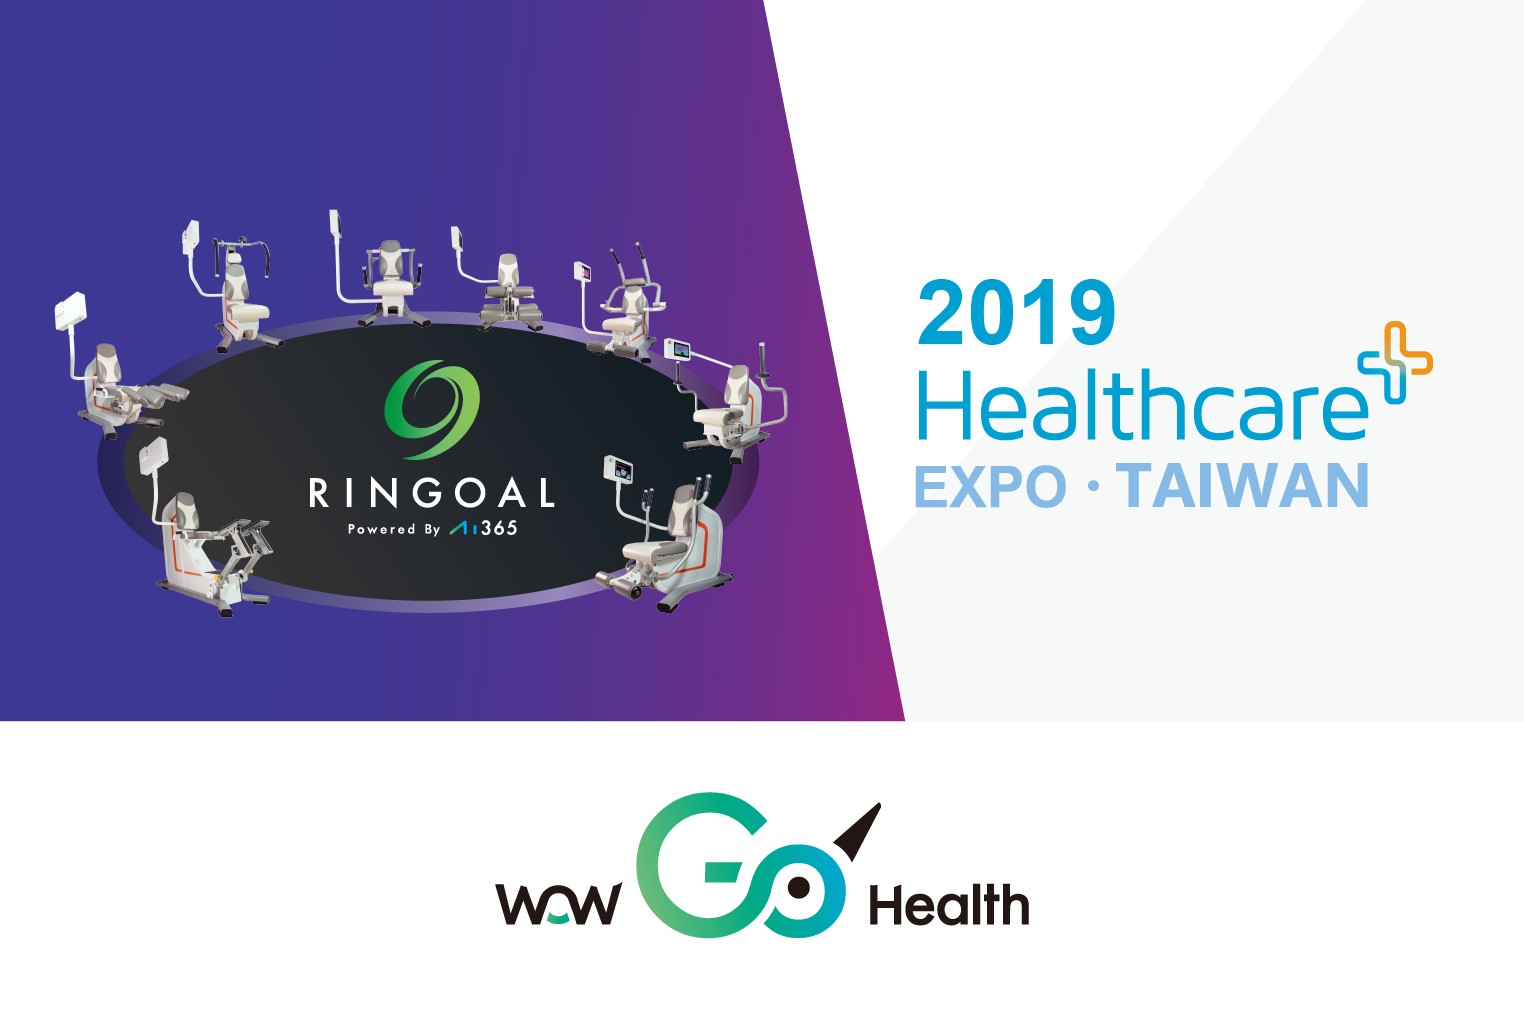 高登智慧科技股份有限公司將於2019年12月5~8日參加「2019台灣醫療科技展」歡迎蒞臨參觀!